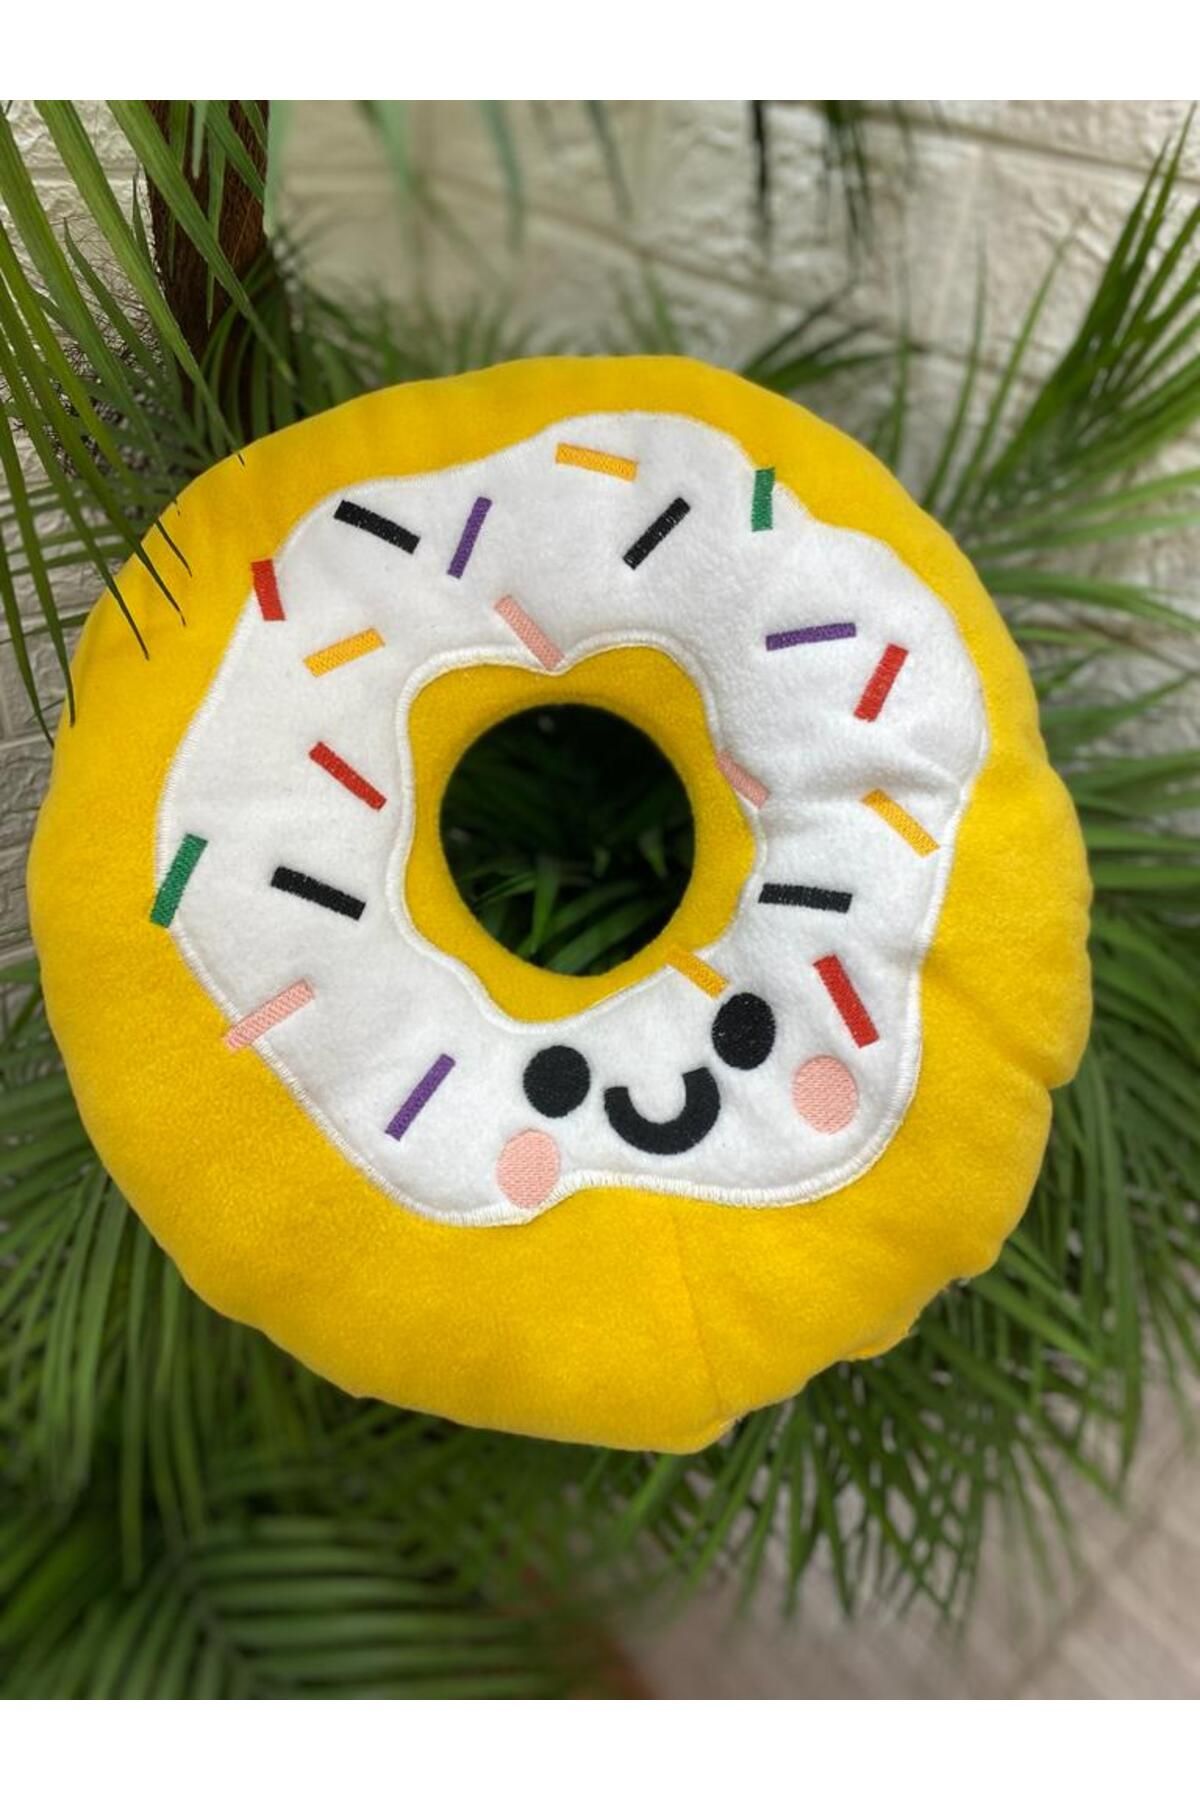 by ballı biocotton Peluş Donut Yastık Sarı Sevimli Hediyelik Seyahat Yastığı Dekoratif